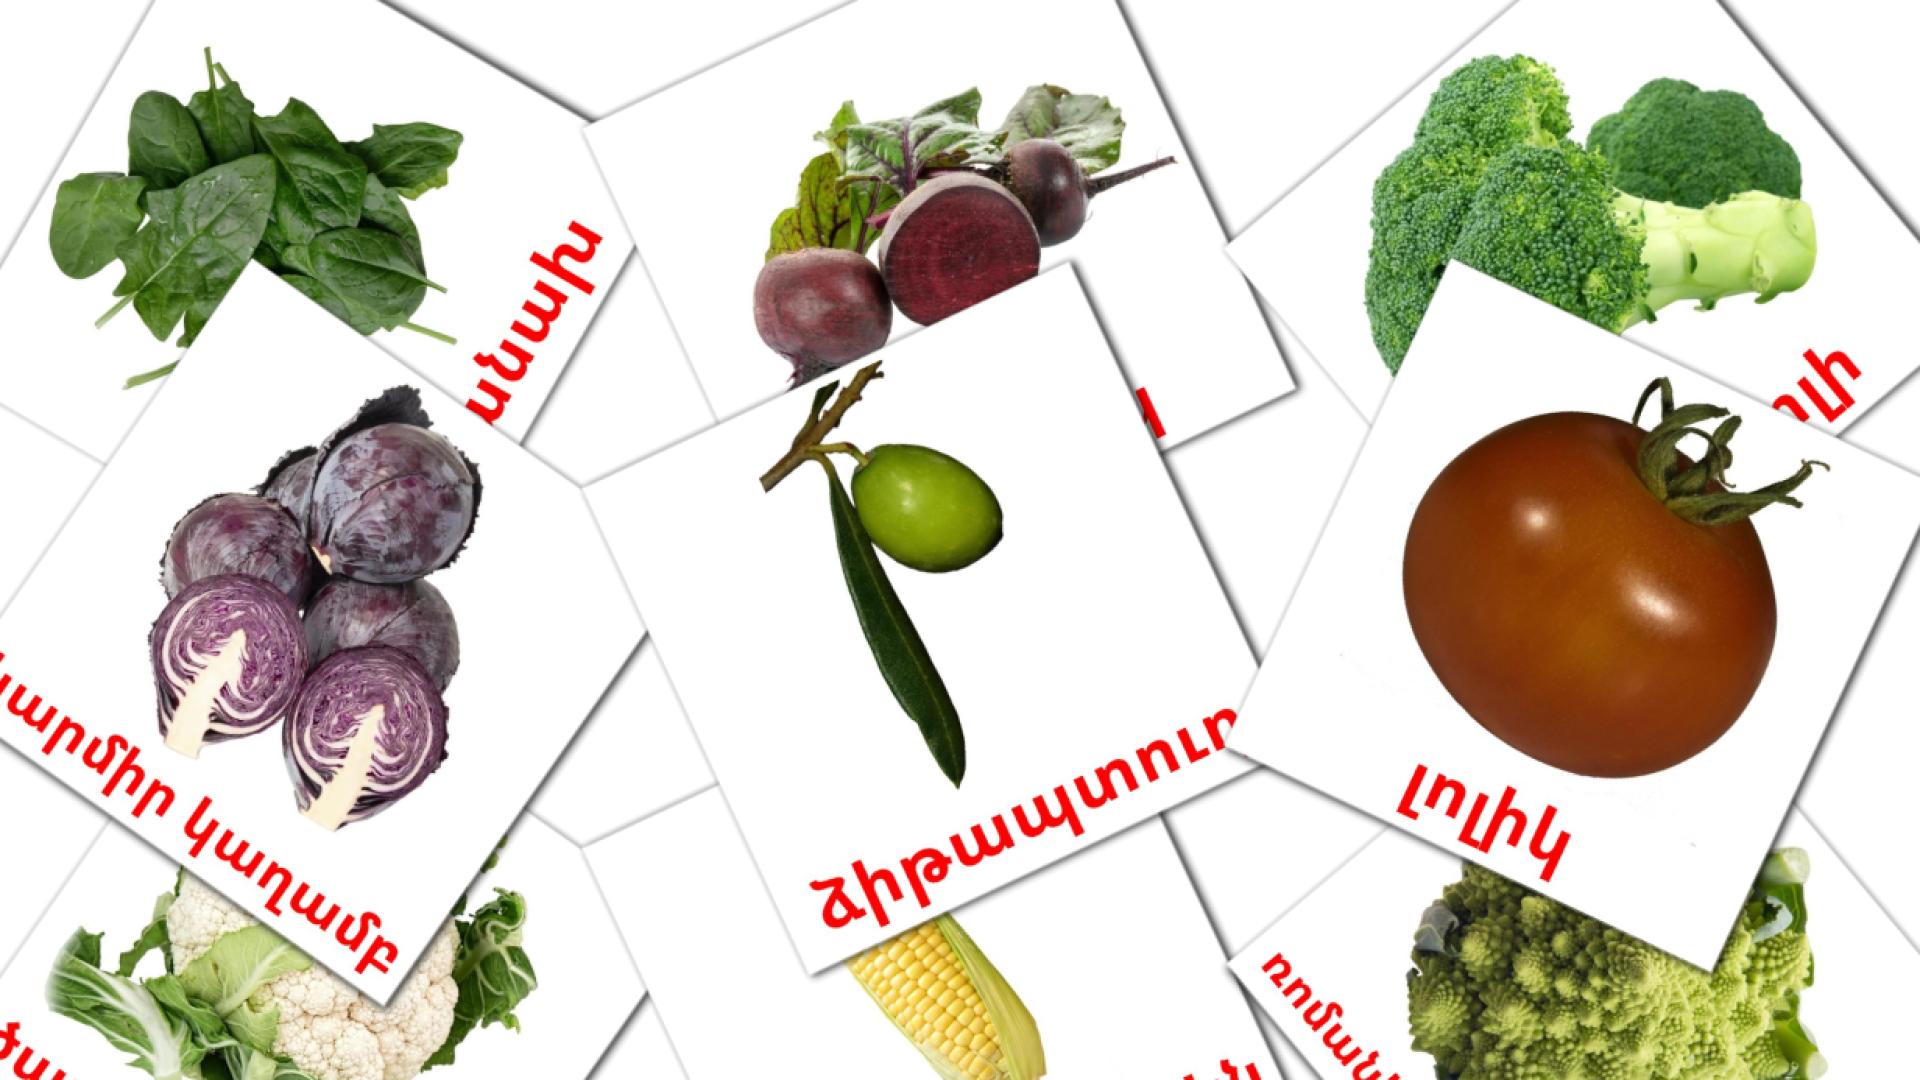 La verdura - Schede di vocabolario armeno